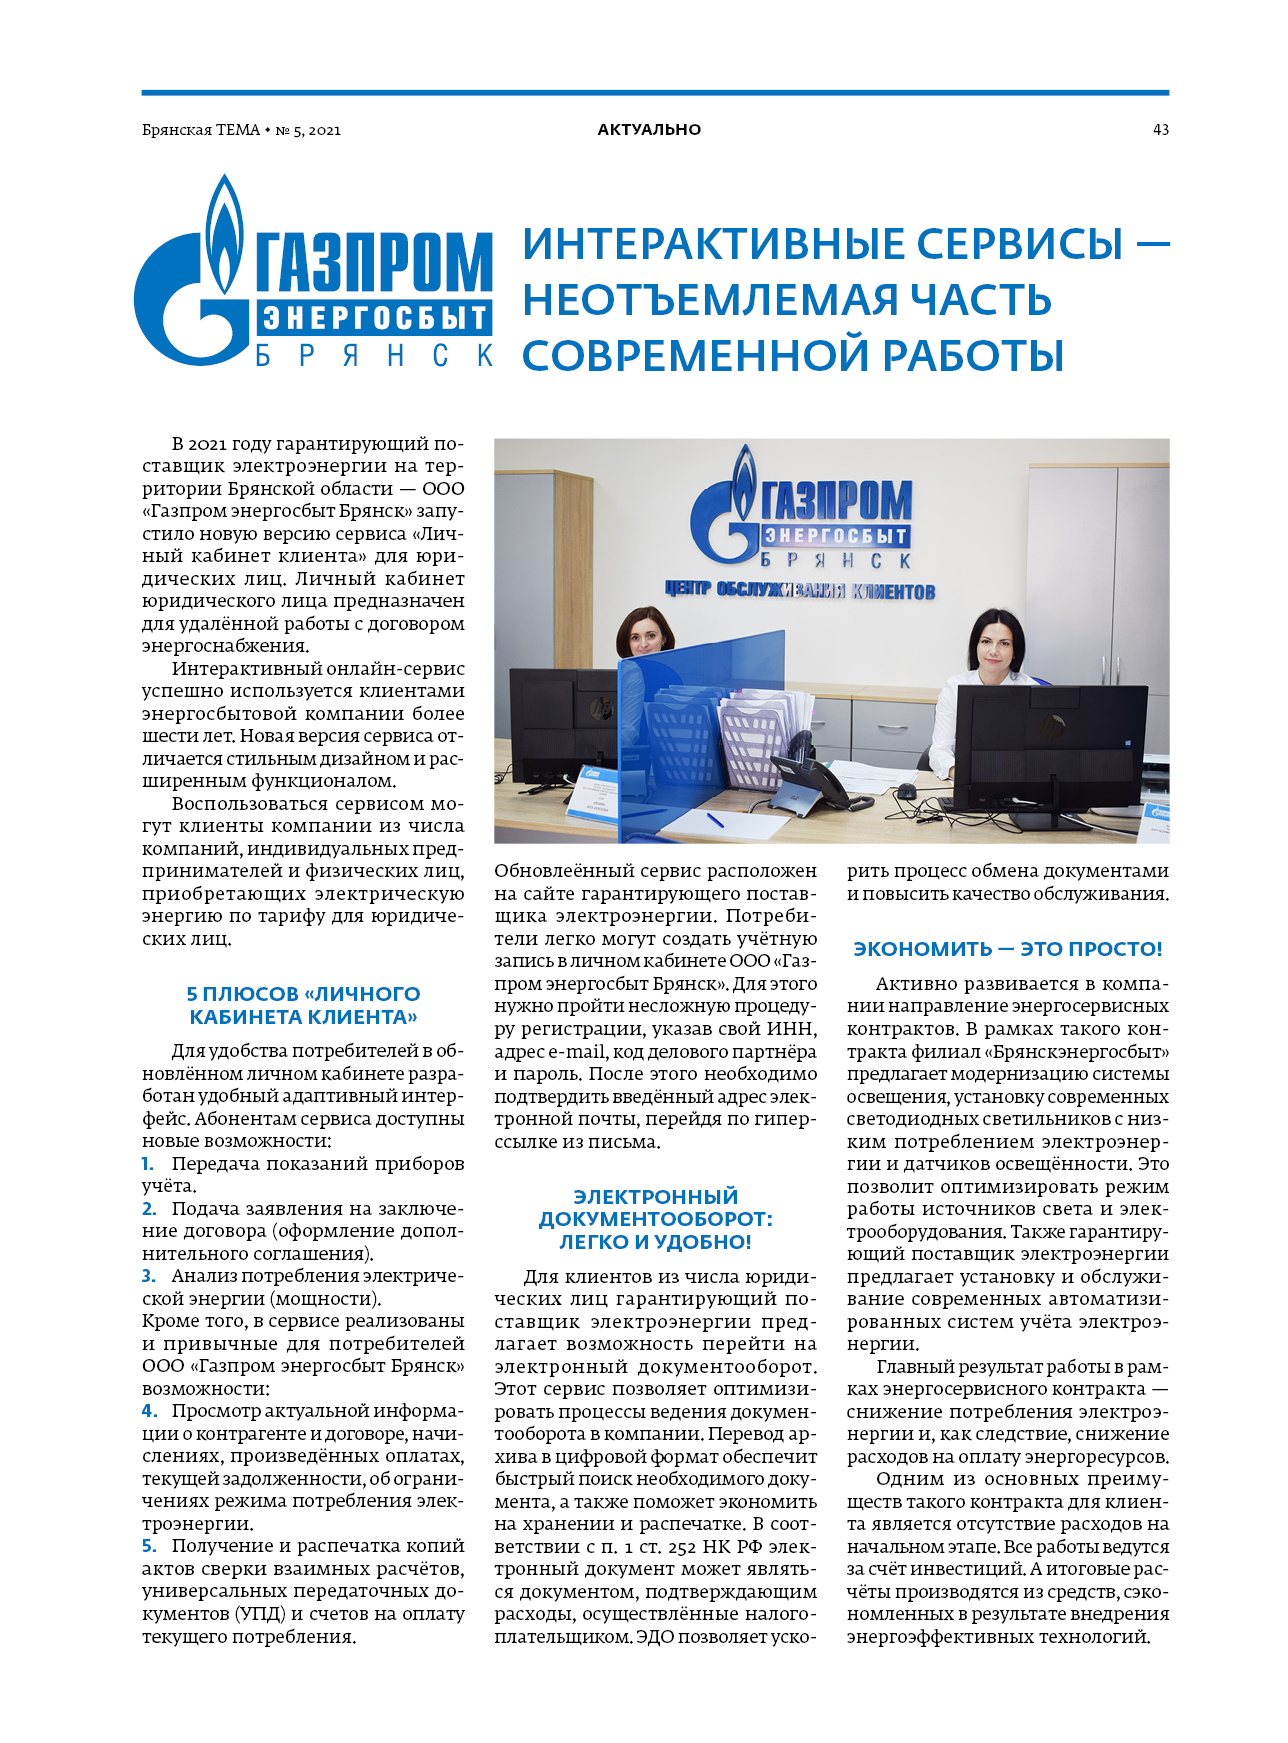 ООО «Газпром энергосбыт Брянск»: интерактивные сервисы – неотъемлемая часть современной работы